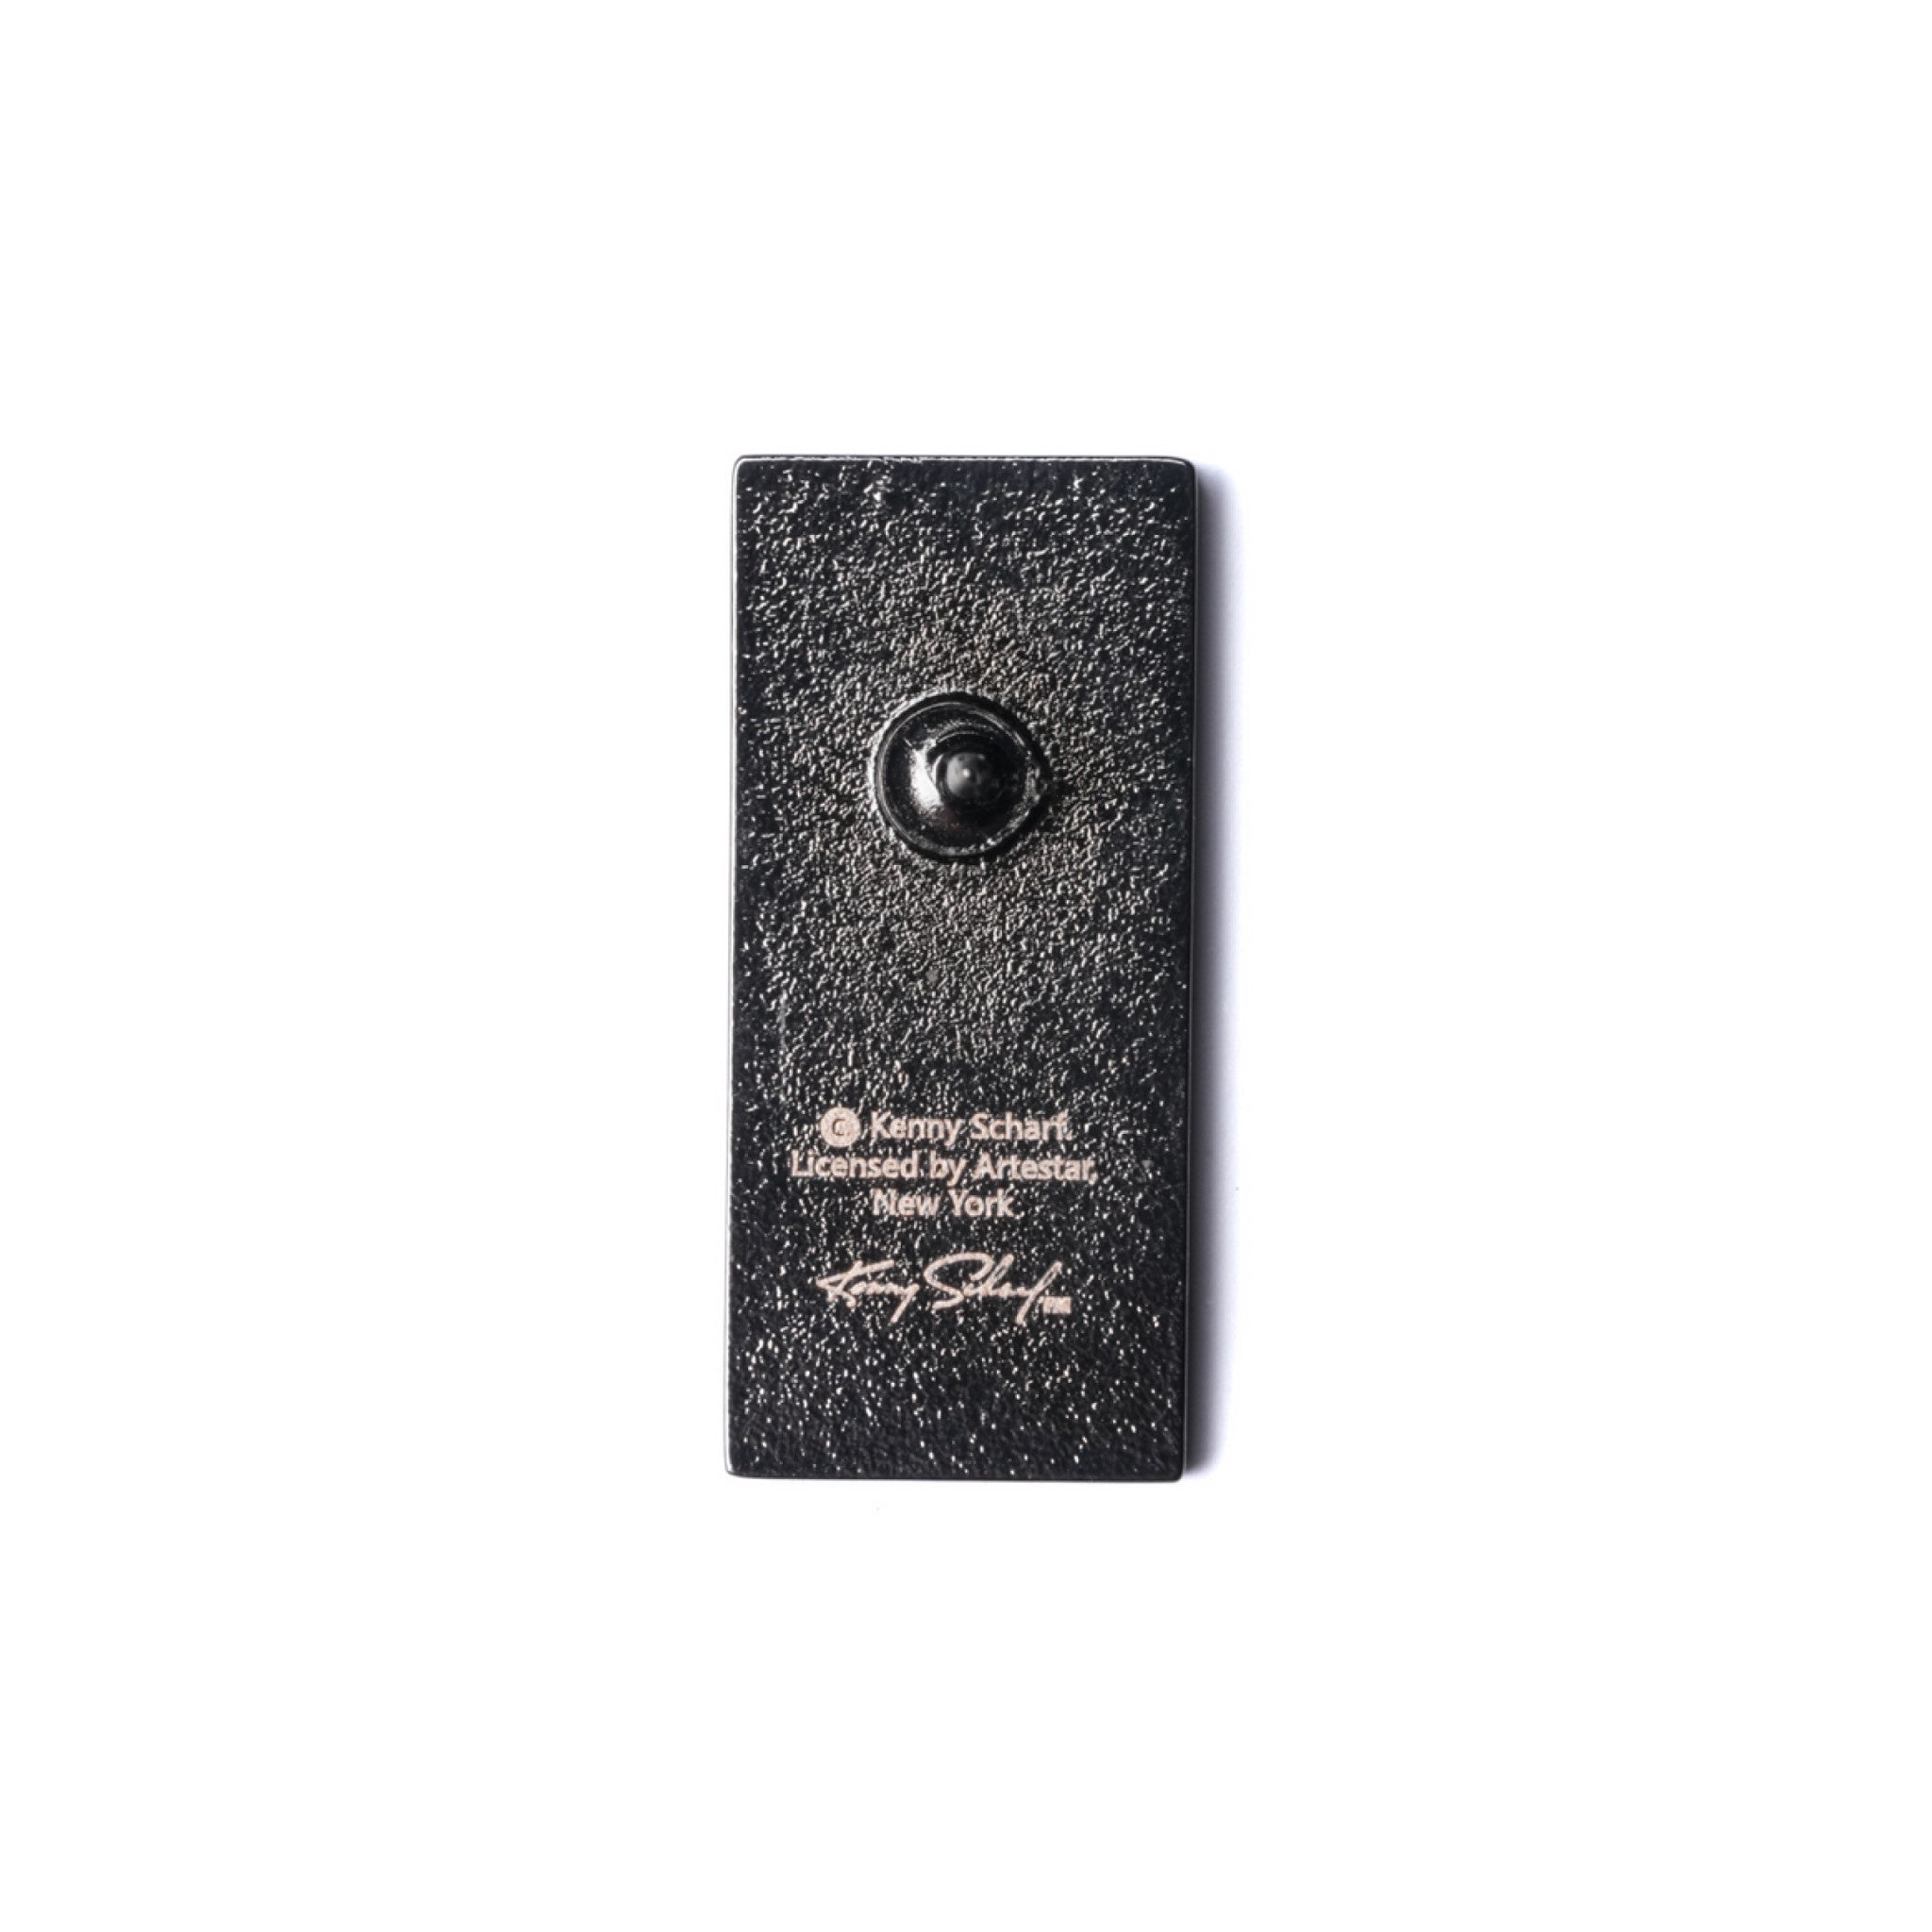 Kenny Scharf - Box Pin - Wynwood Walls Shop